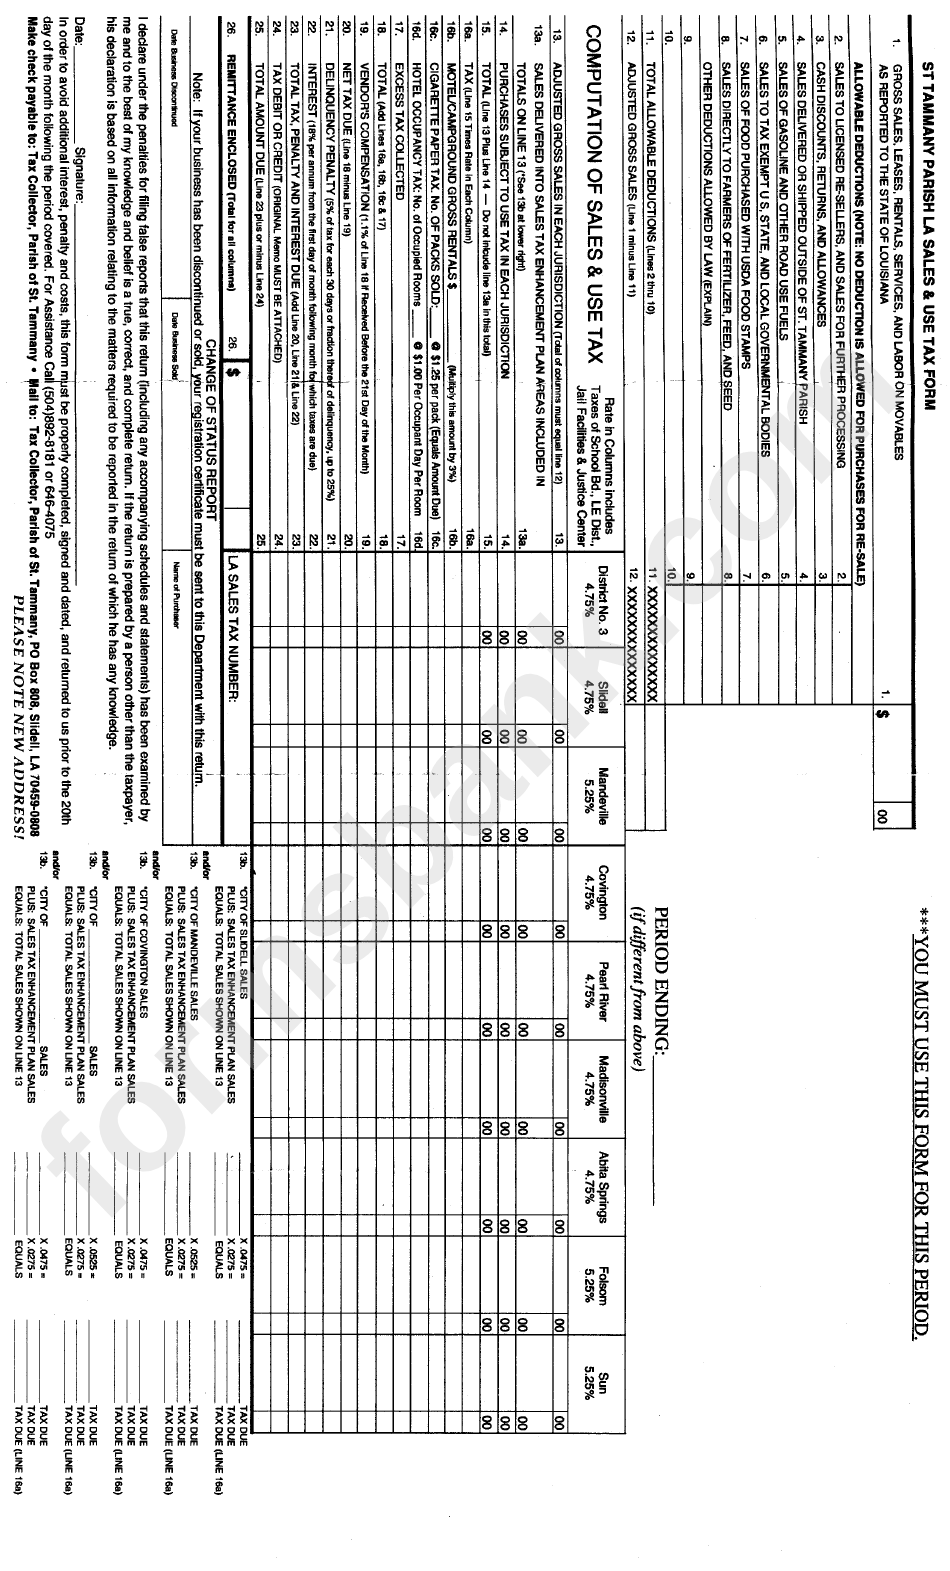 St Tammany Parish Sales & Use Tax Form